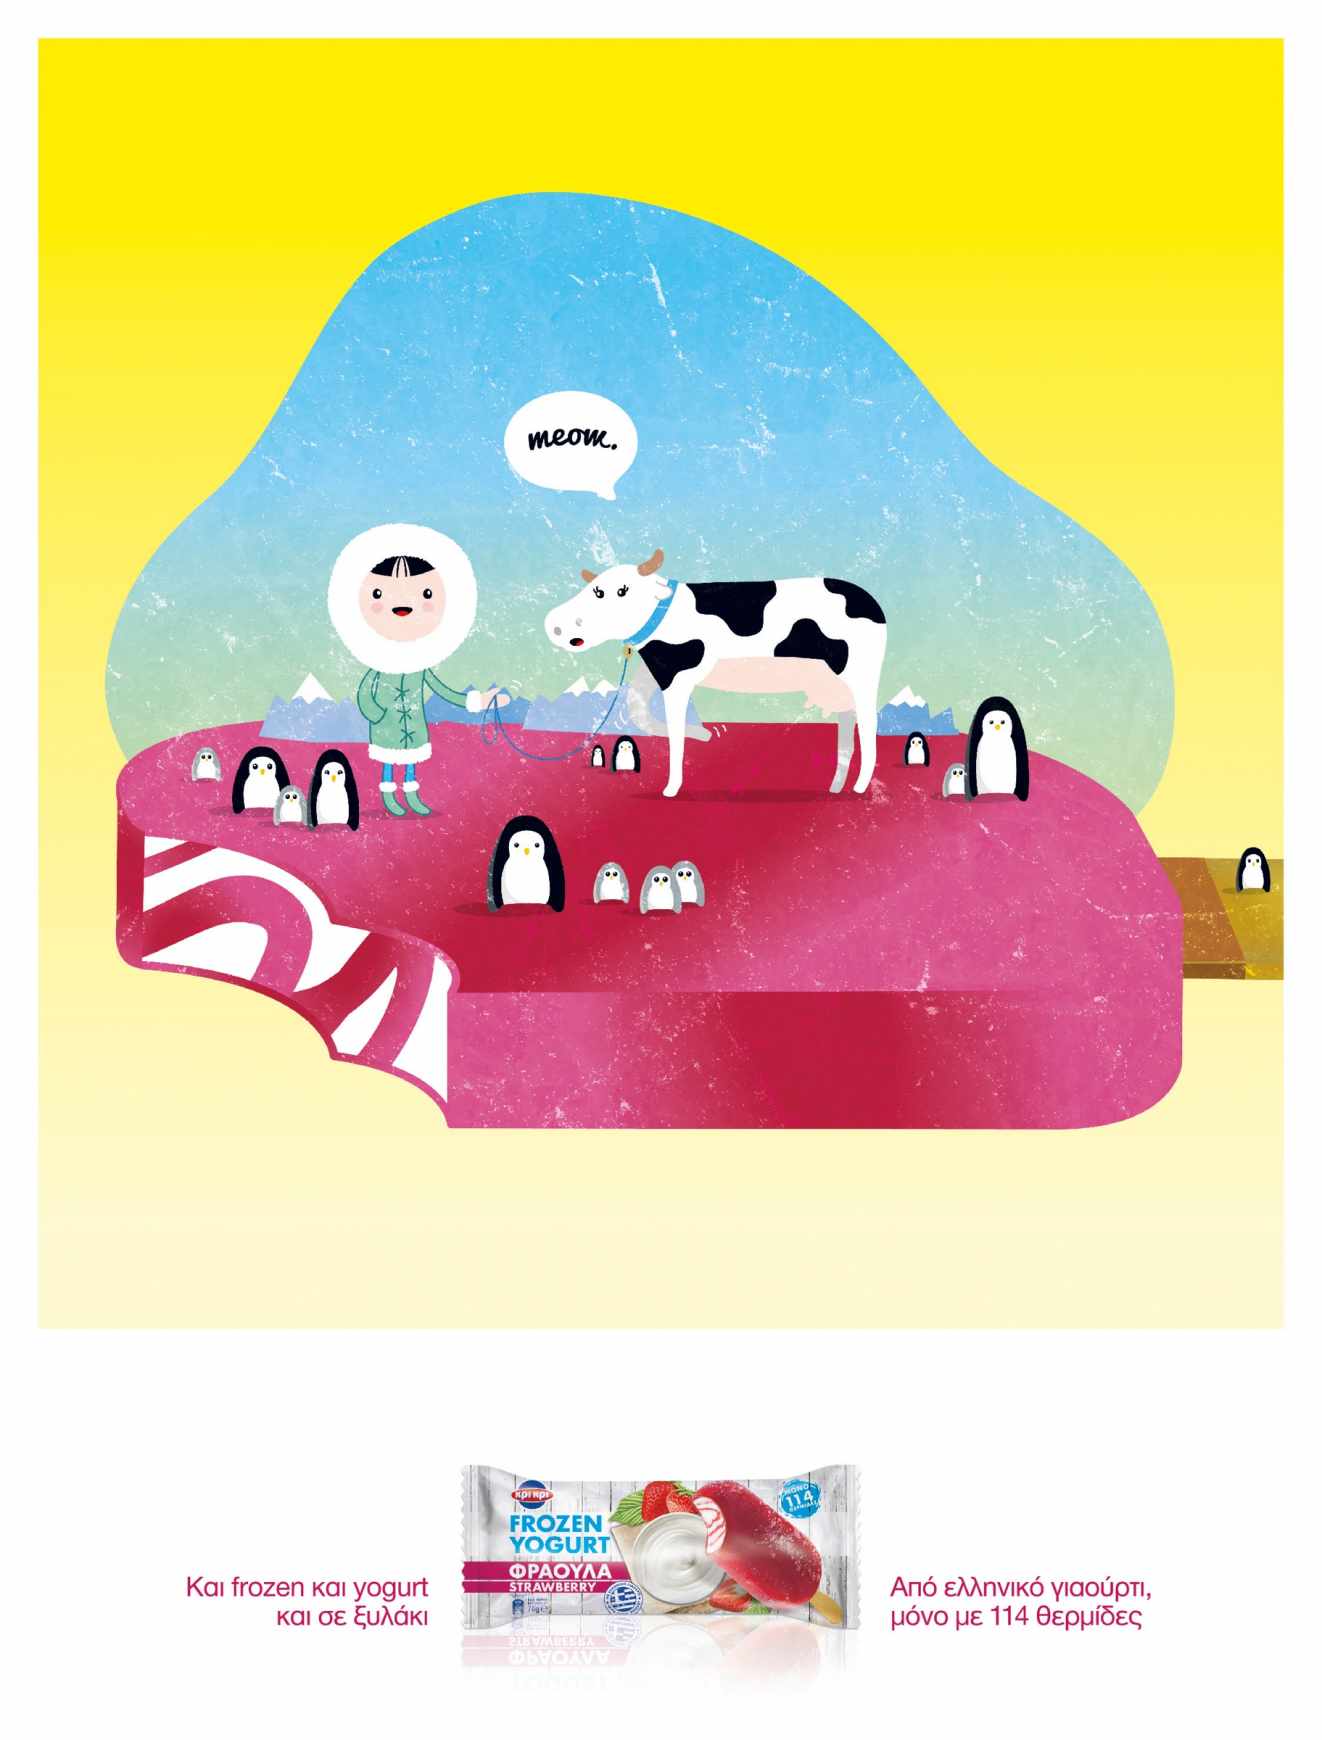 雅典Kri Kri Frozen Yoghurt平面广告设计